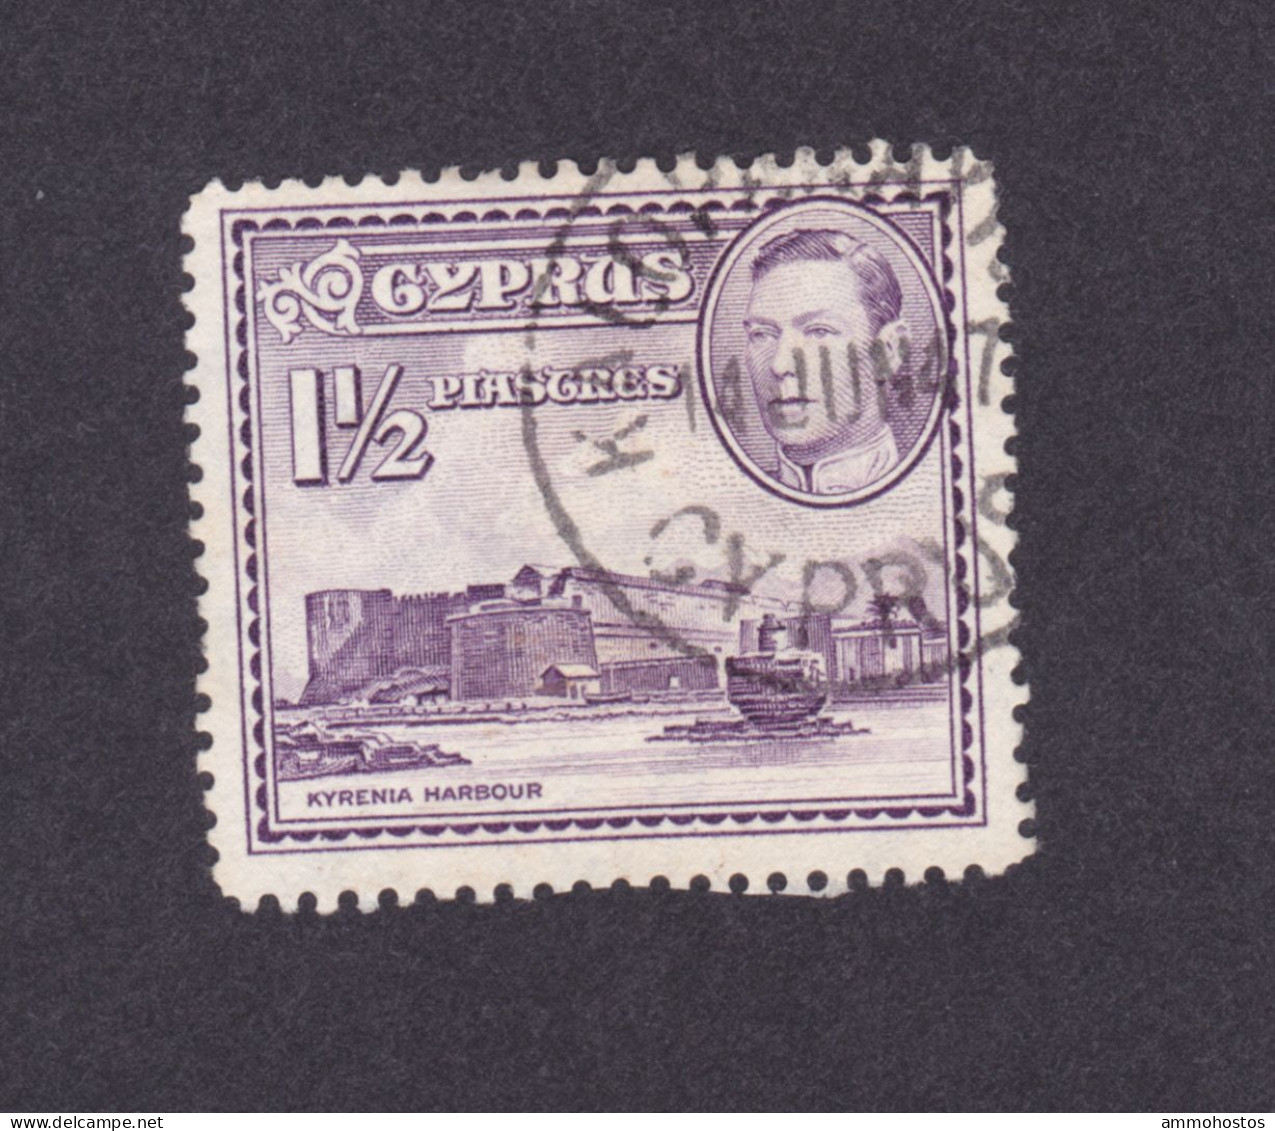 CYPRUS KGVI KALOPANAYIOTIS SINGLE  CIRCLE RURAL POSTMARK - Chipre (...-1960)